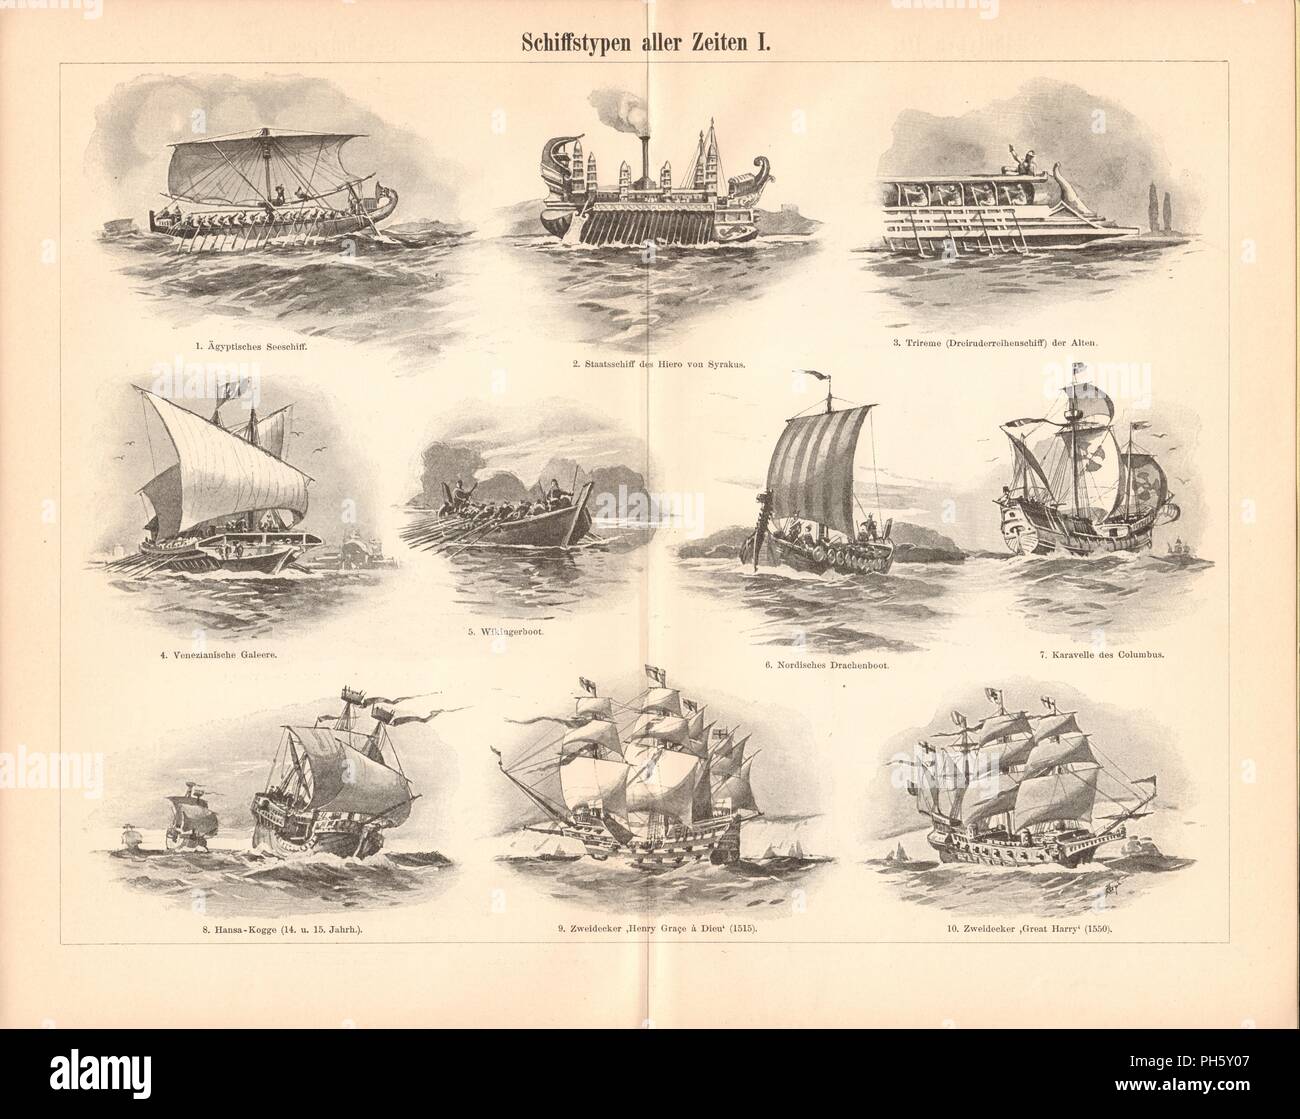 Bateau Antique Illustration. Images contiennent un ensemble de navires, à l'origine sur l'illustration pour les encyclopédies de la fin des années 1800. Banque D'Images